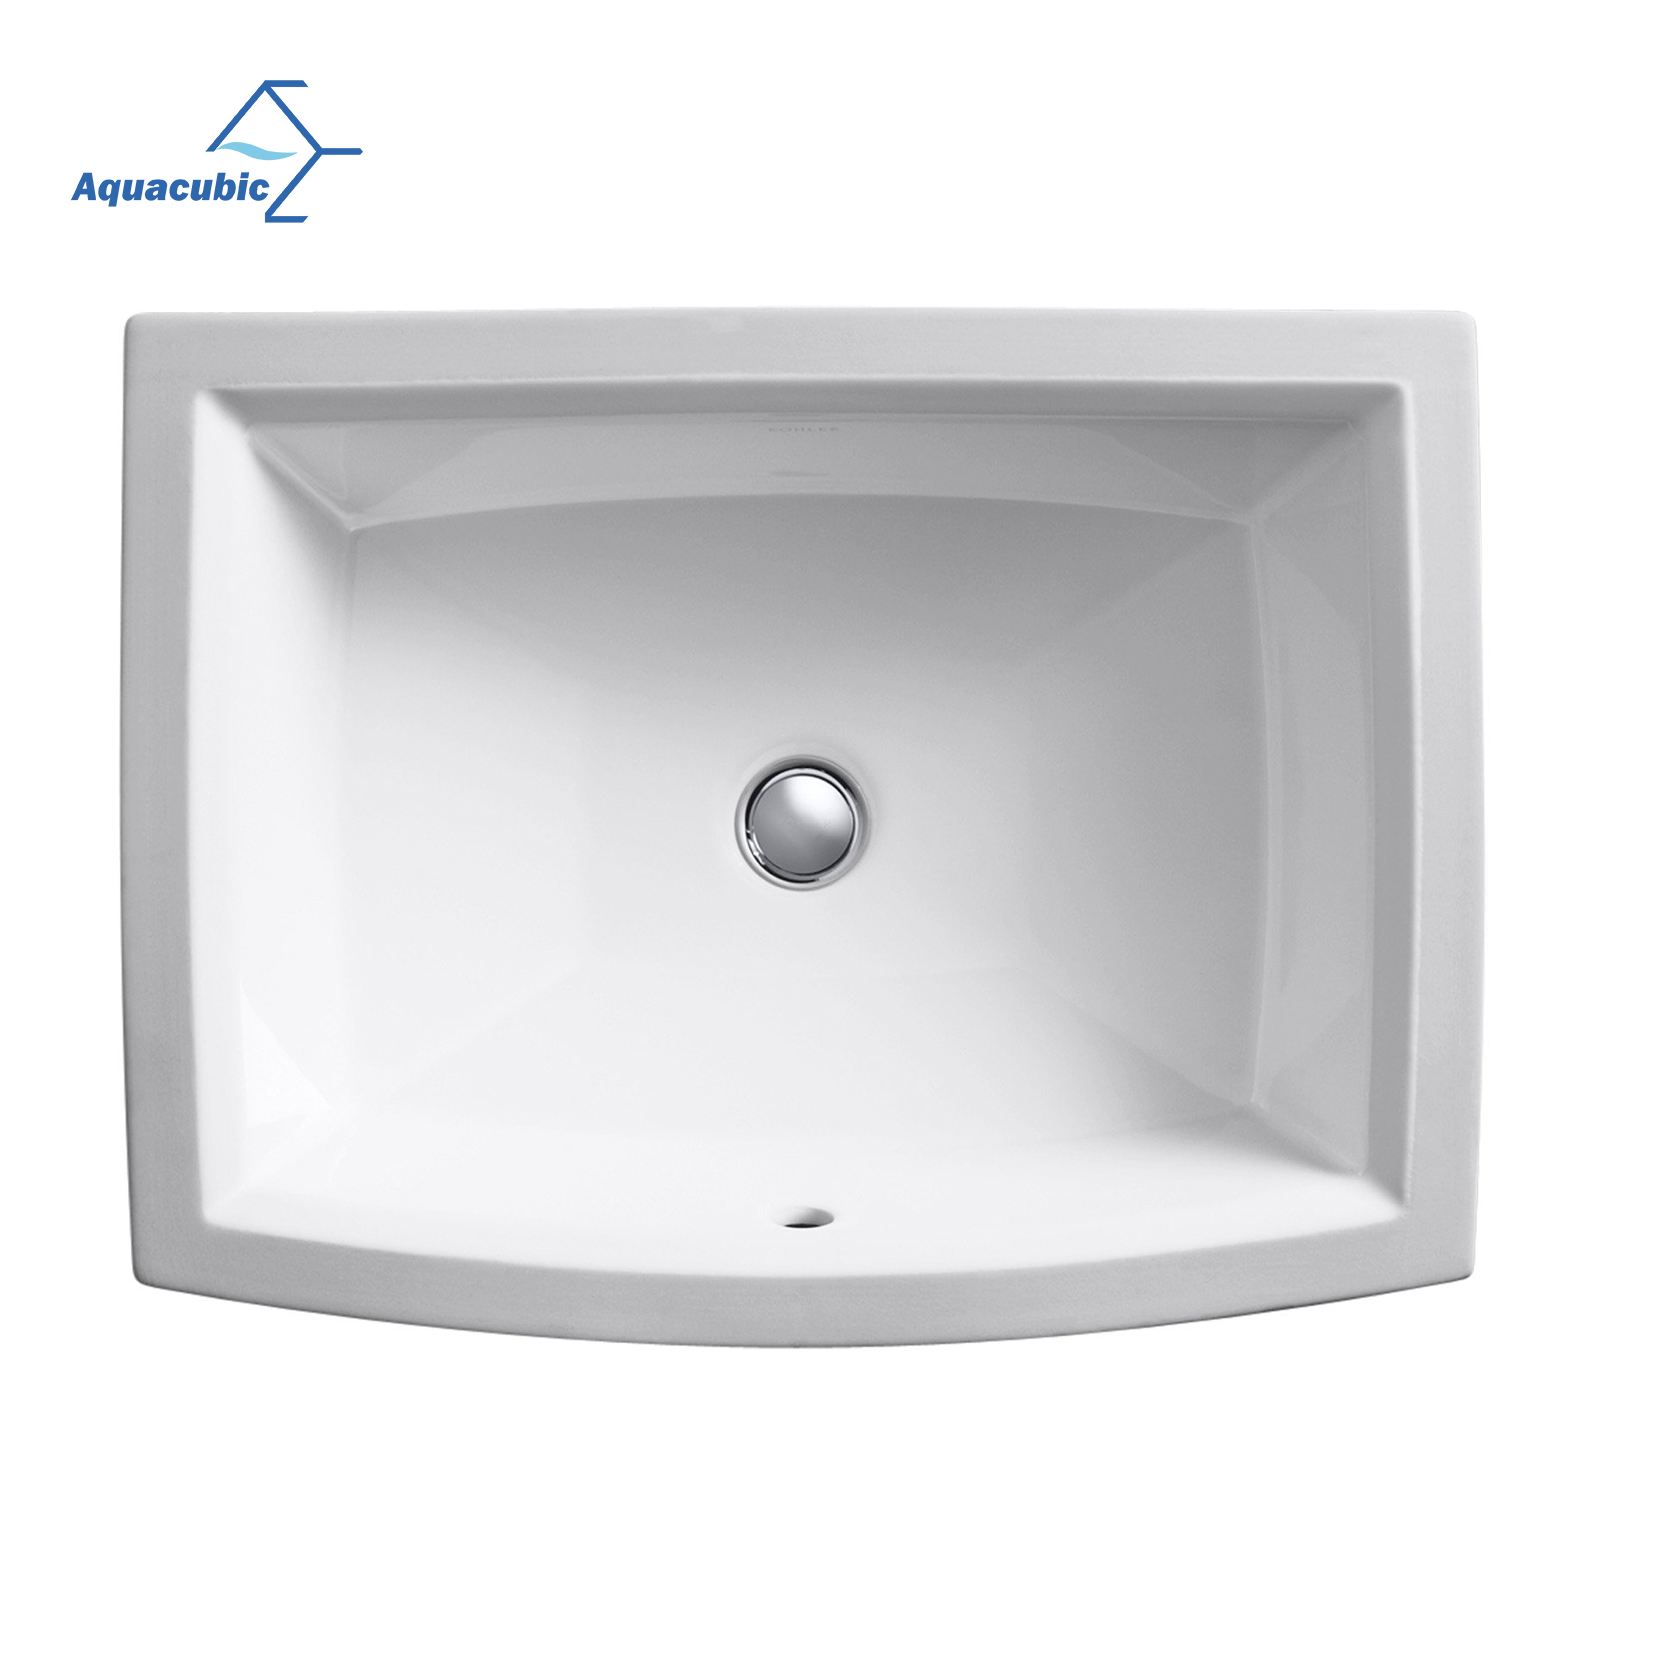 Lavandino sottopiano Aquacubic dal design moderno per la casa, bianco, rettangolare, per bagno, in ceramica, per lavaggio a mano 